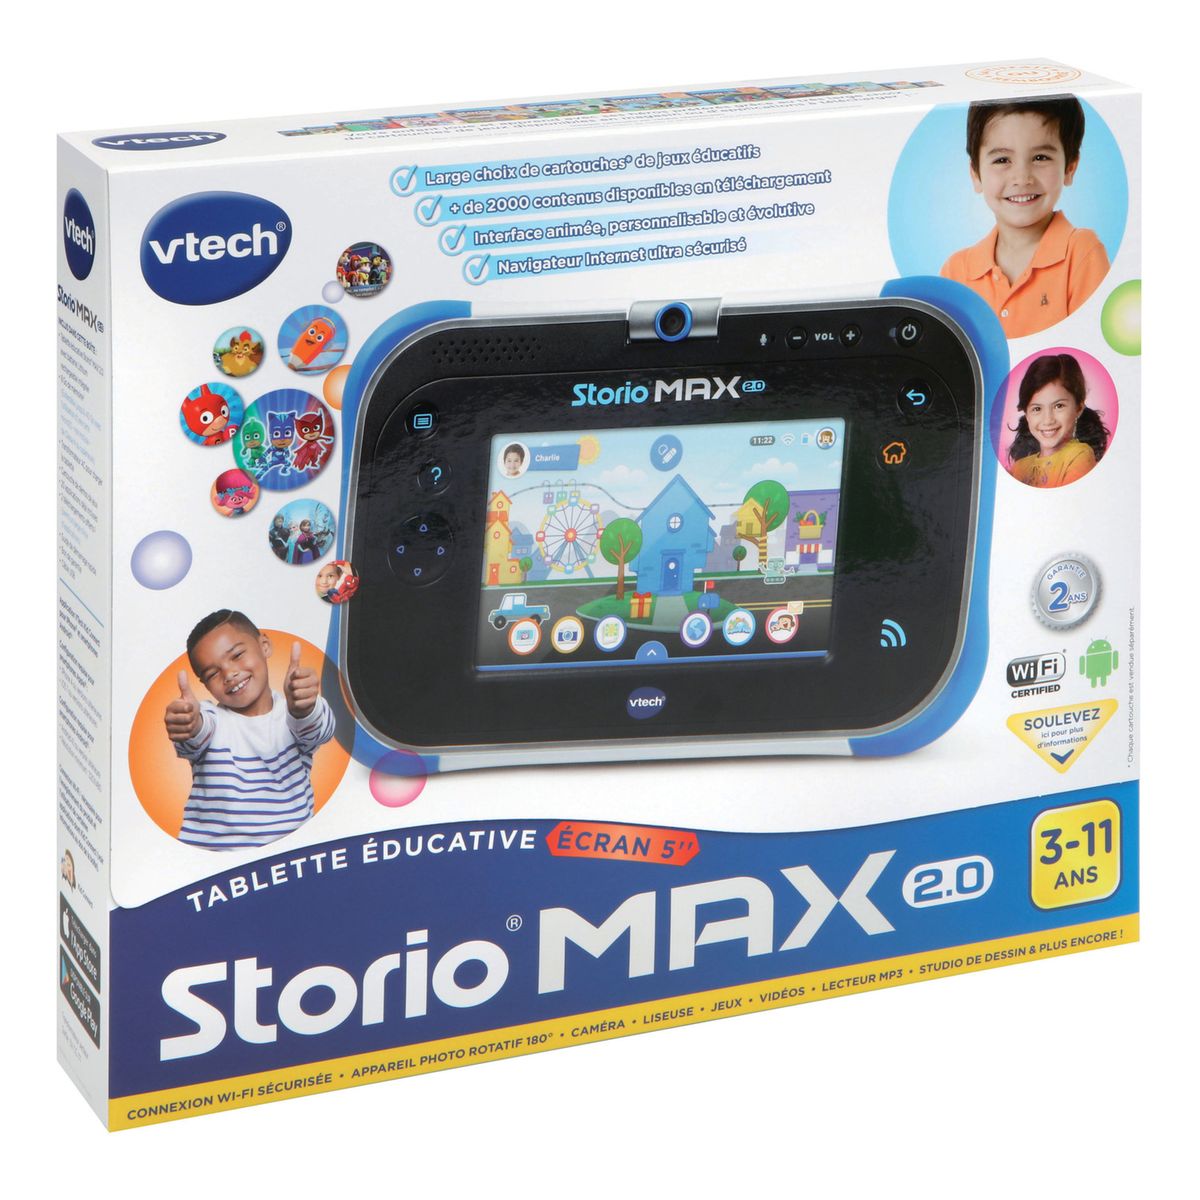 VTech - Tablette pour enfant - Storio Max XL 2.0 rose